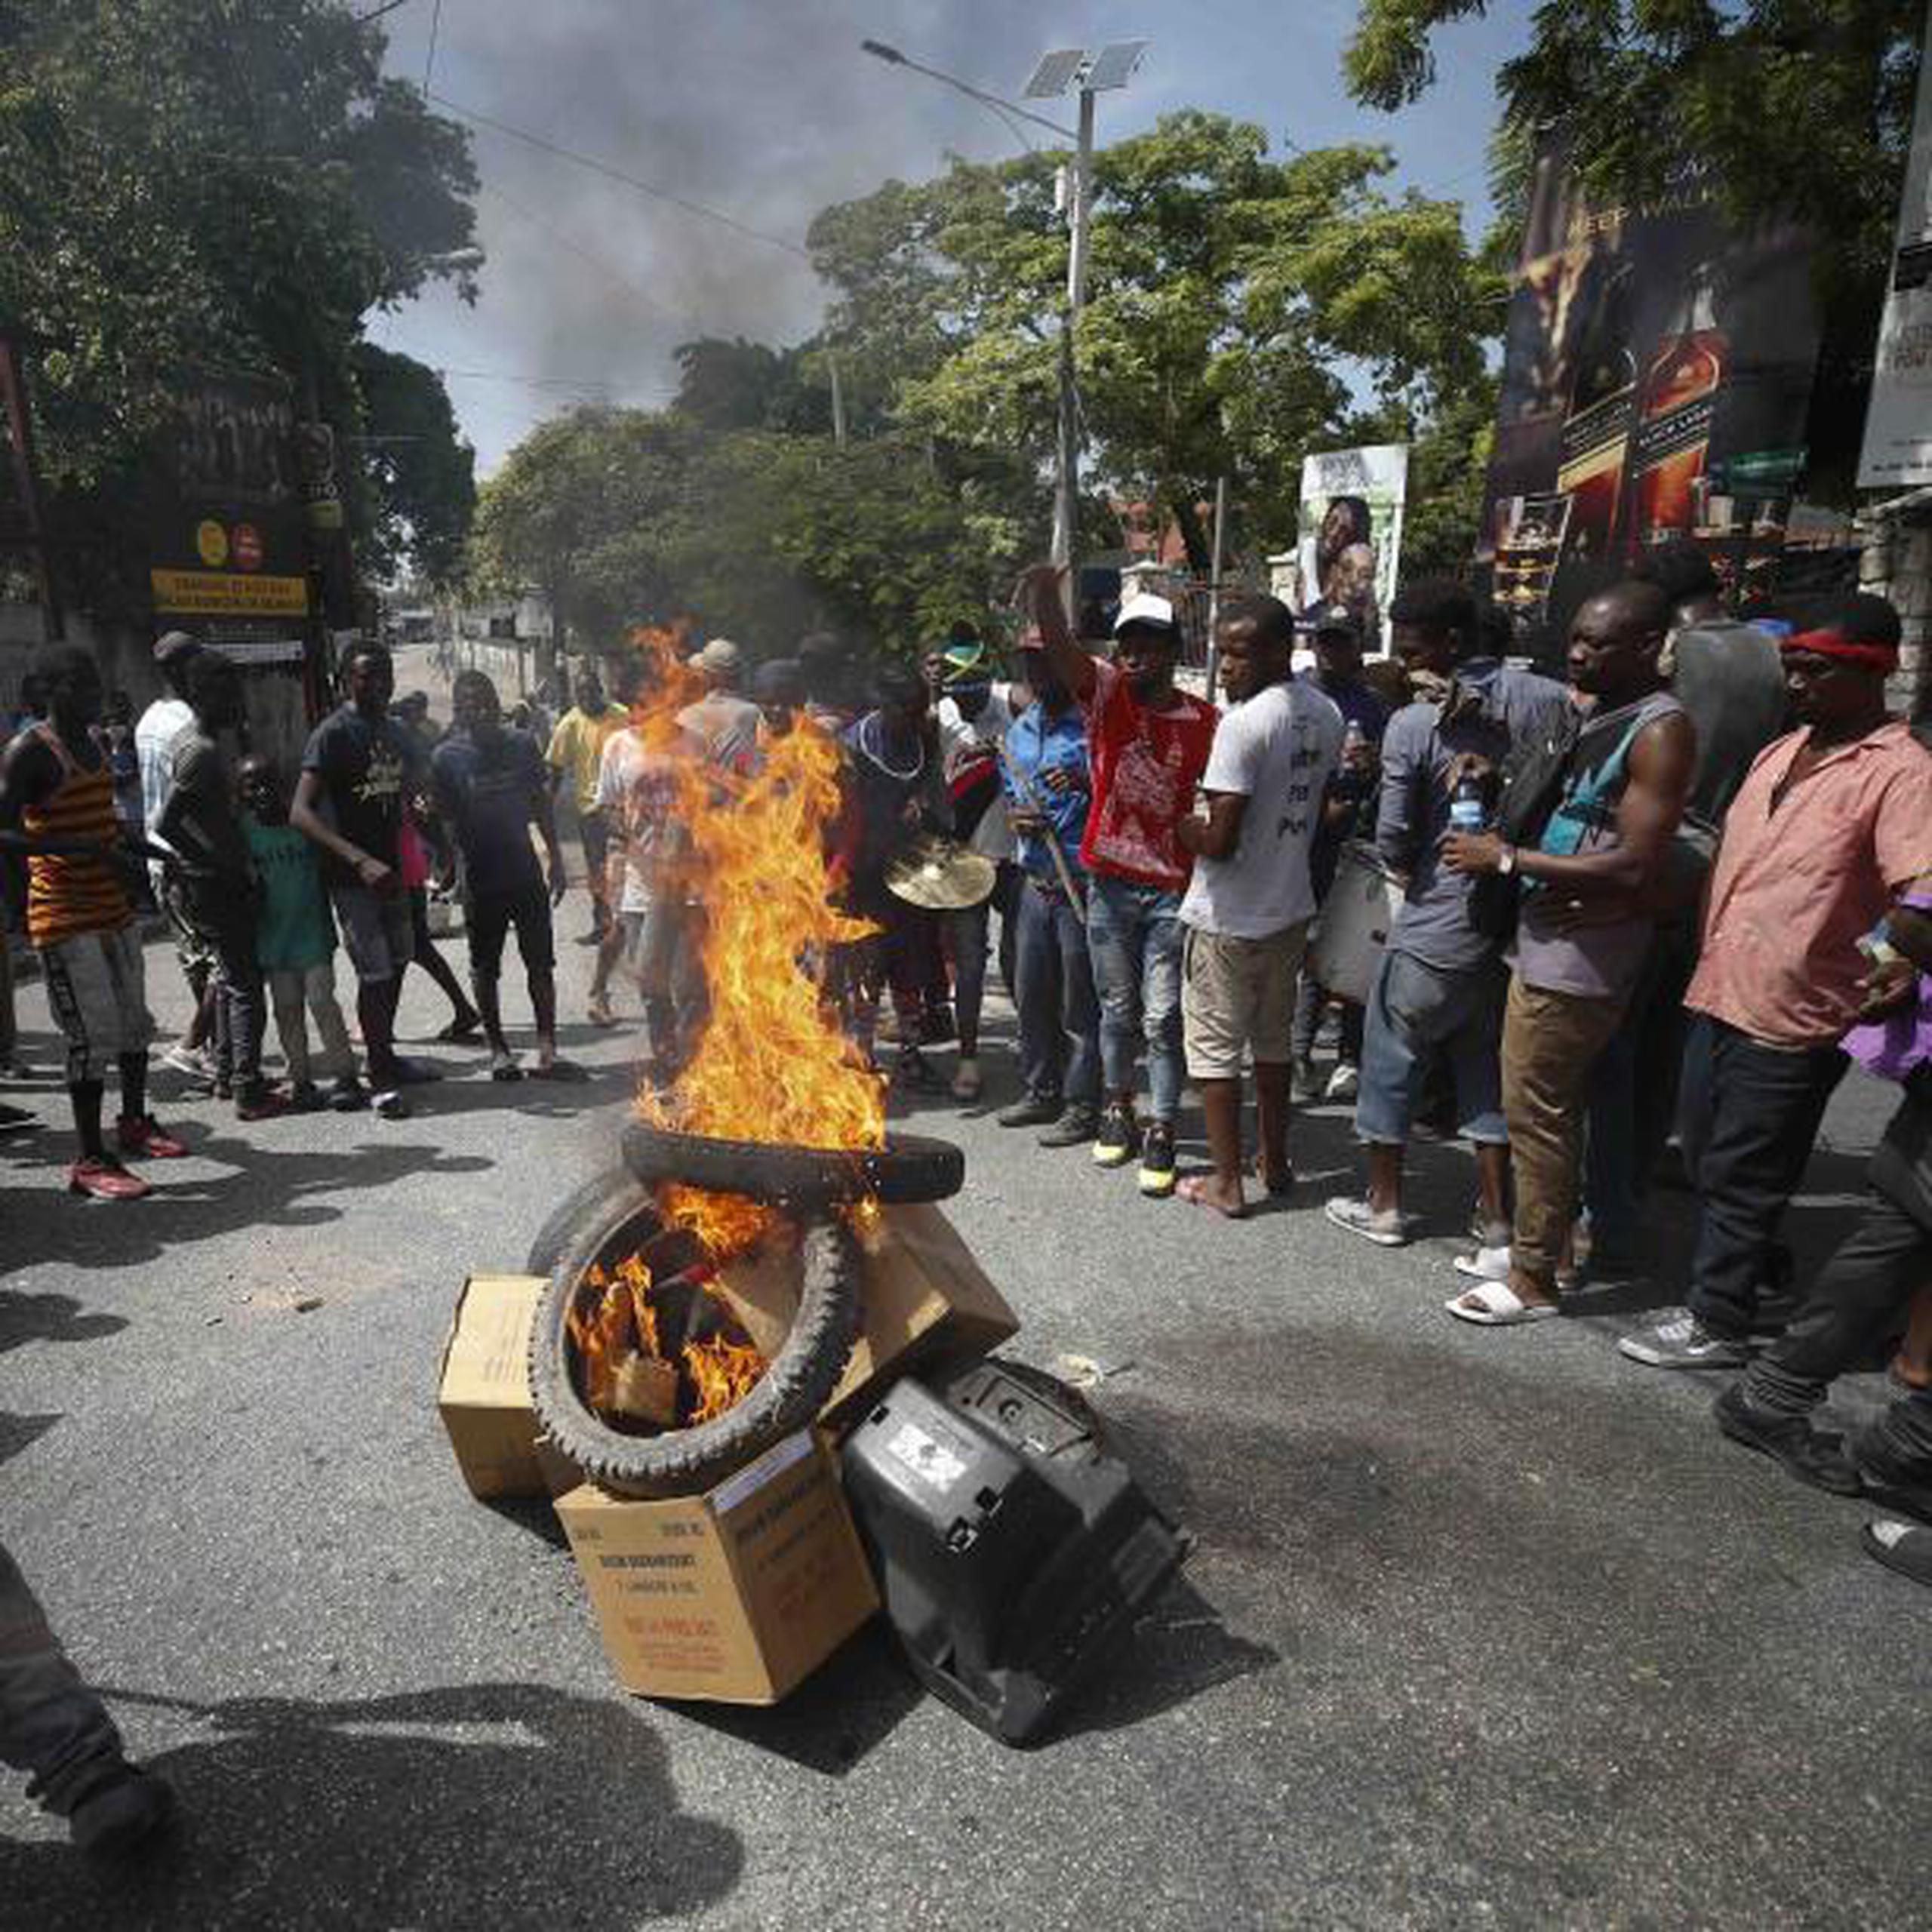 Los manifestantes exigen la renuncia del presidente Jovenel Moïse. (AP / Rebecca Blackwell)